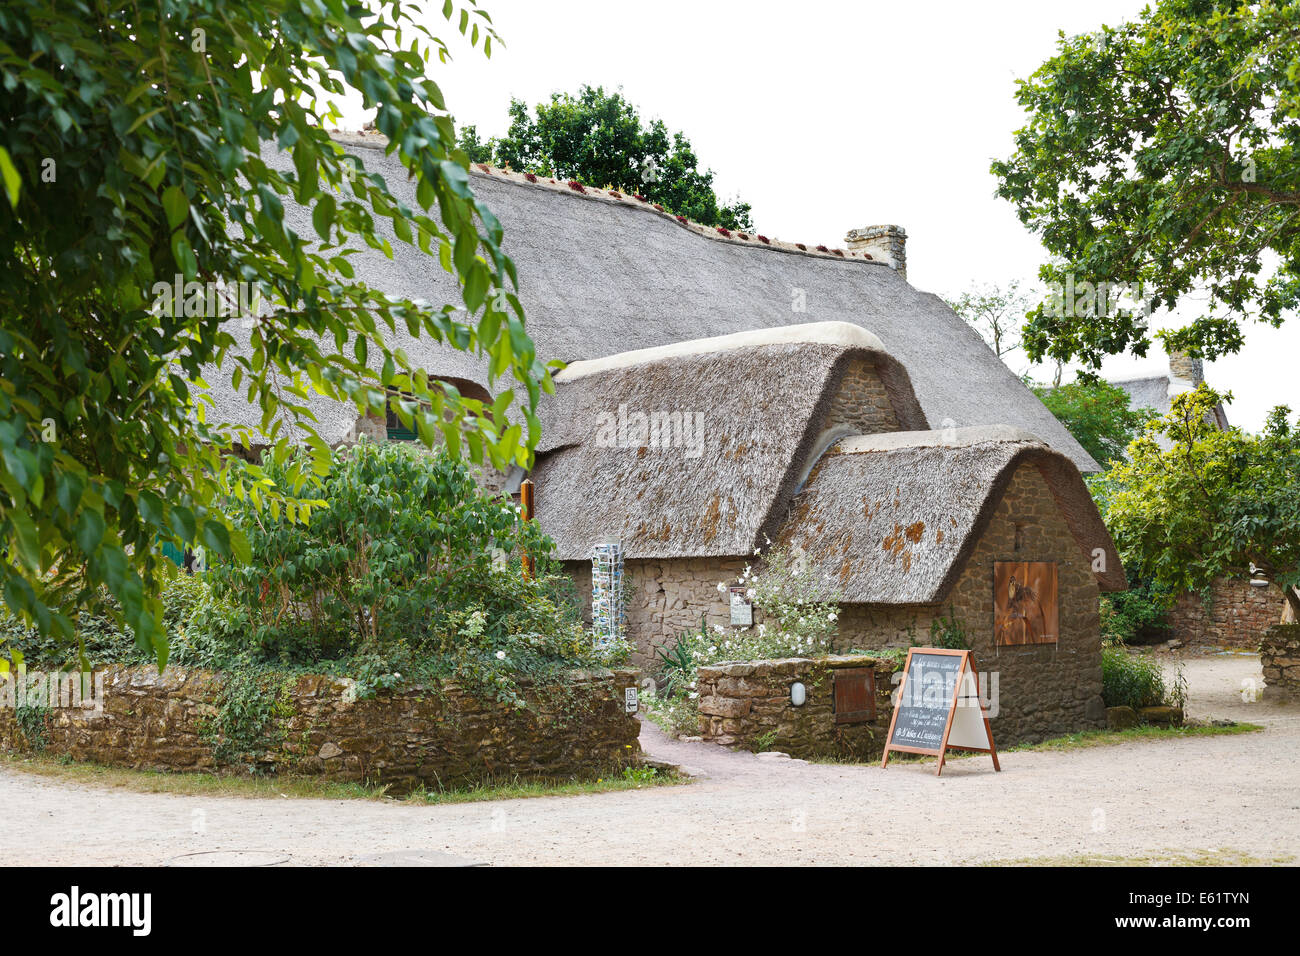 KERHINET,BRIERE, FRANCE - Le 27 juillet 2014 : ancienne maison en bois typique d'antan dans le Parc Naturel Régional de Brière, France. L'inclusion du parc Banque D'Images